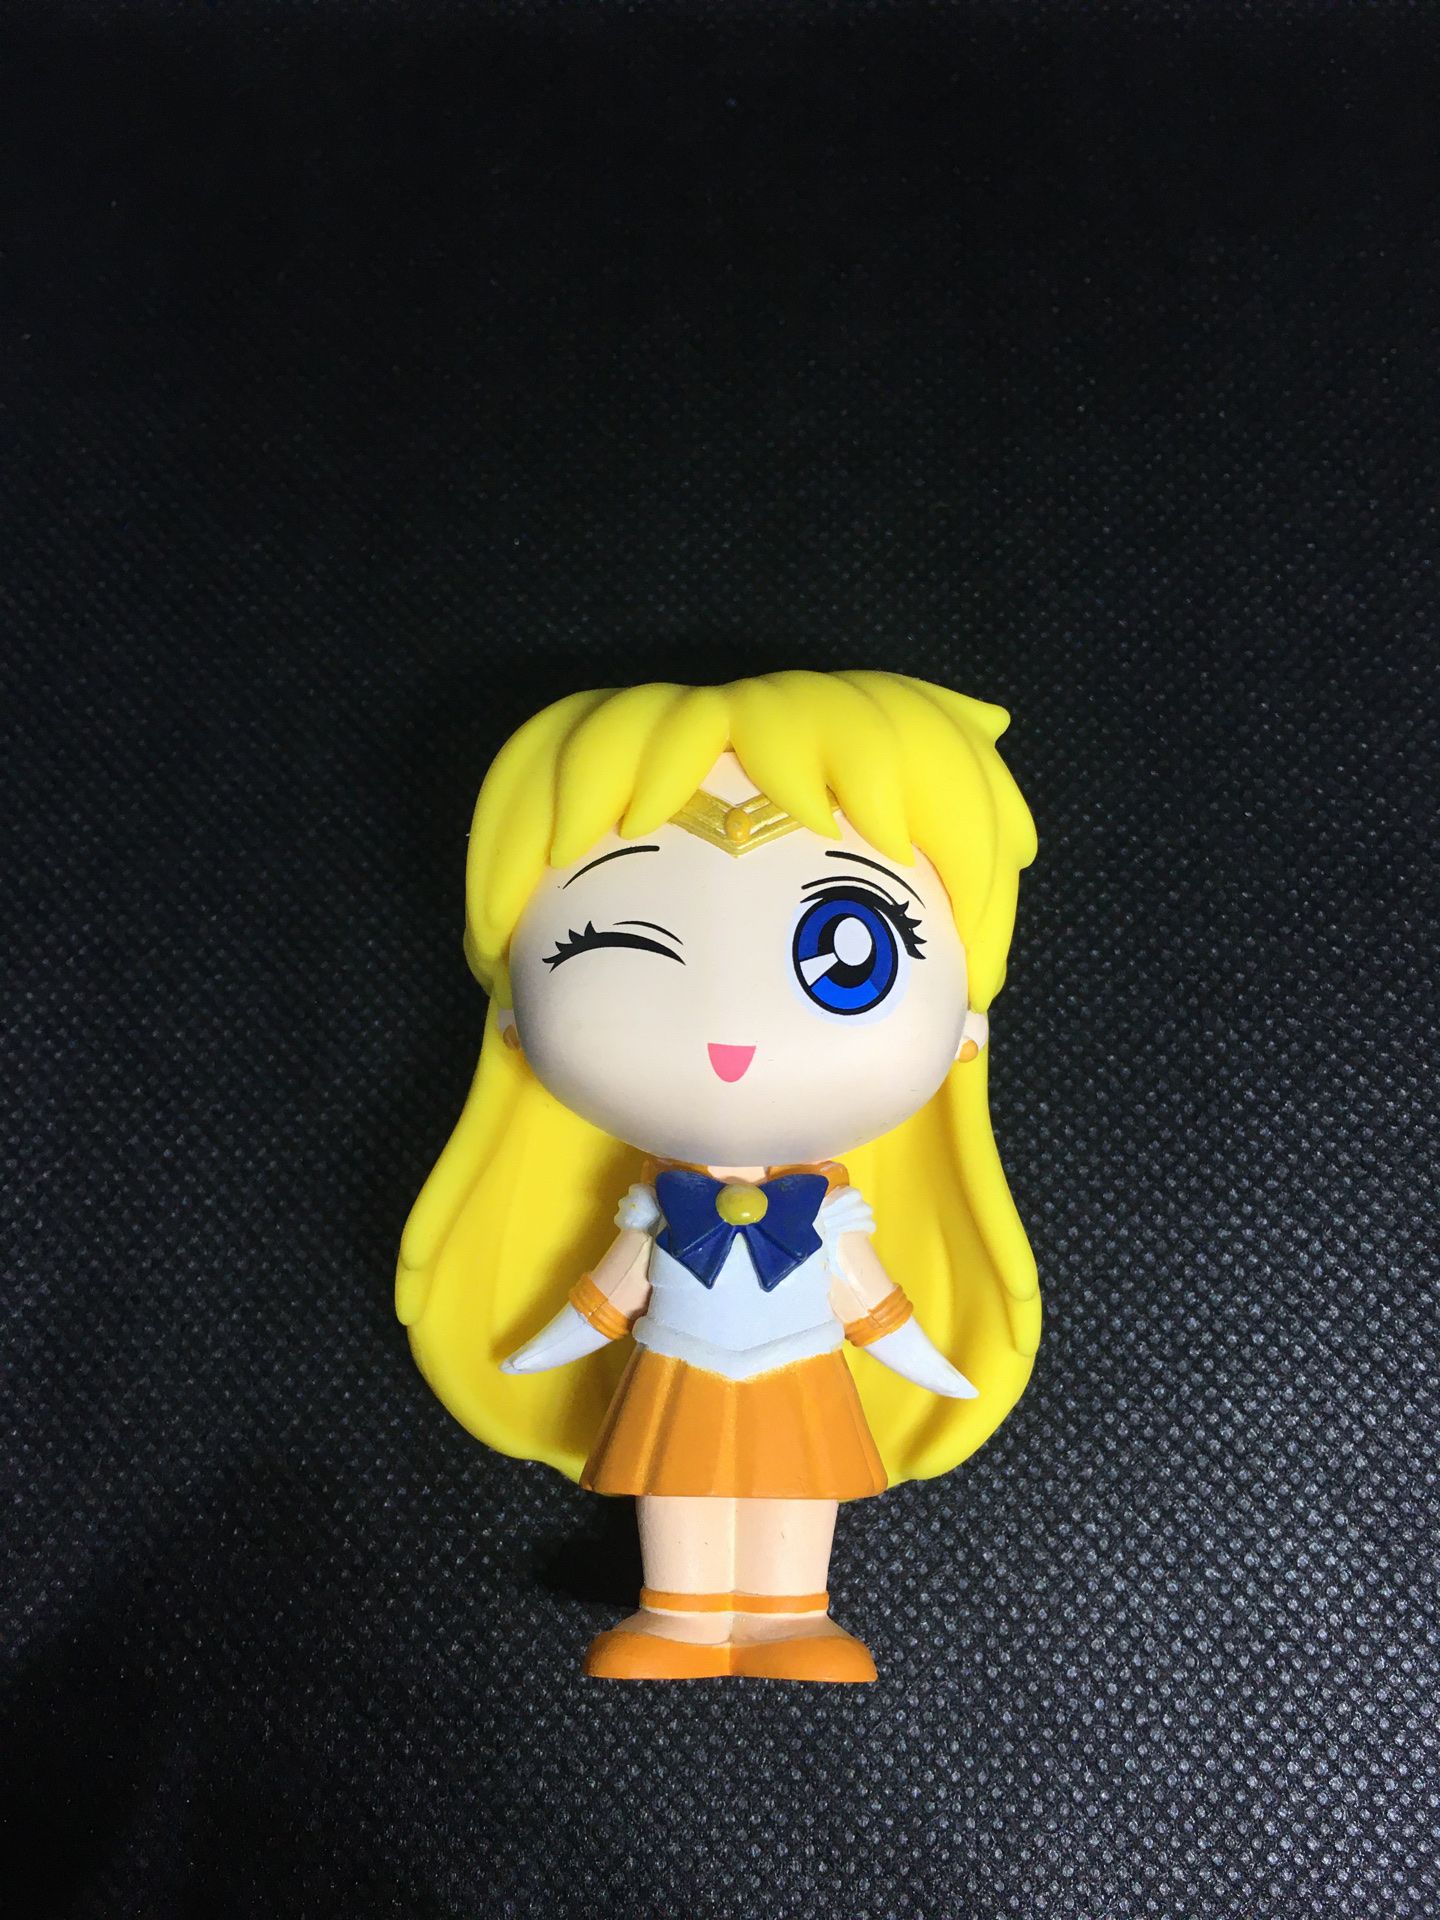 Sailor moon collectible figure